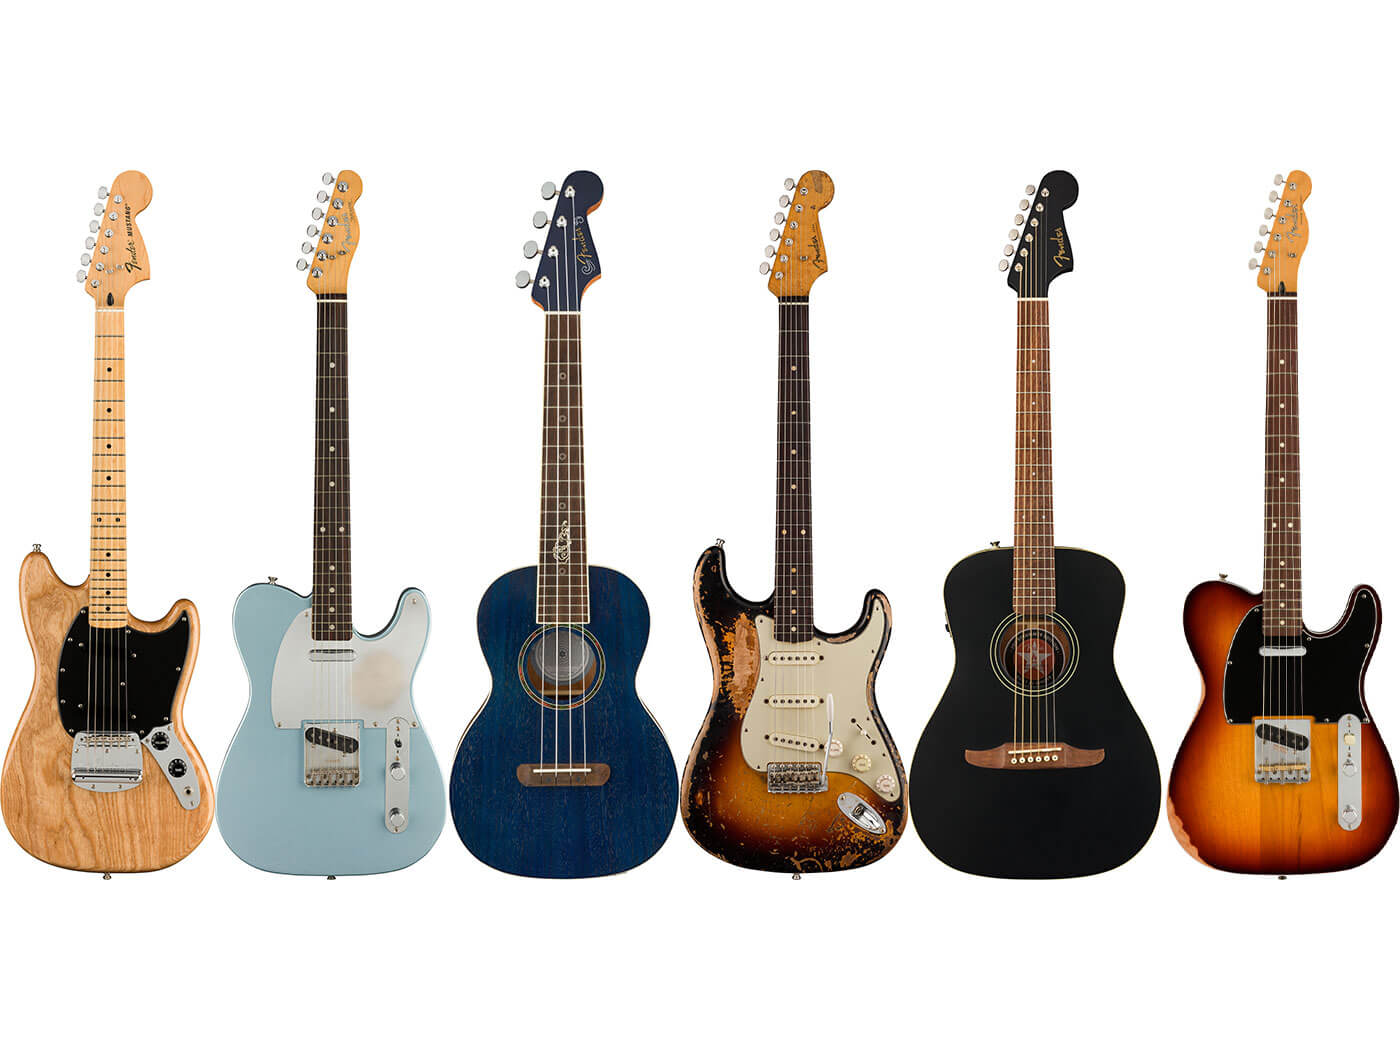 Fender's Artist models for 2021